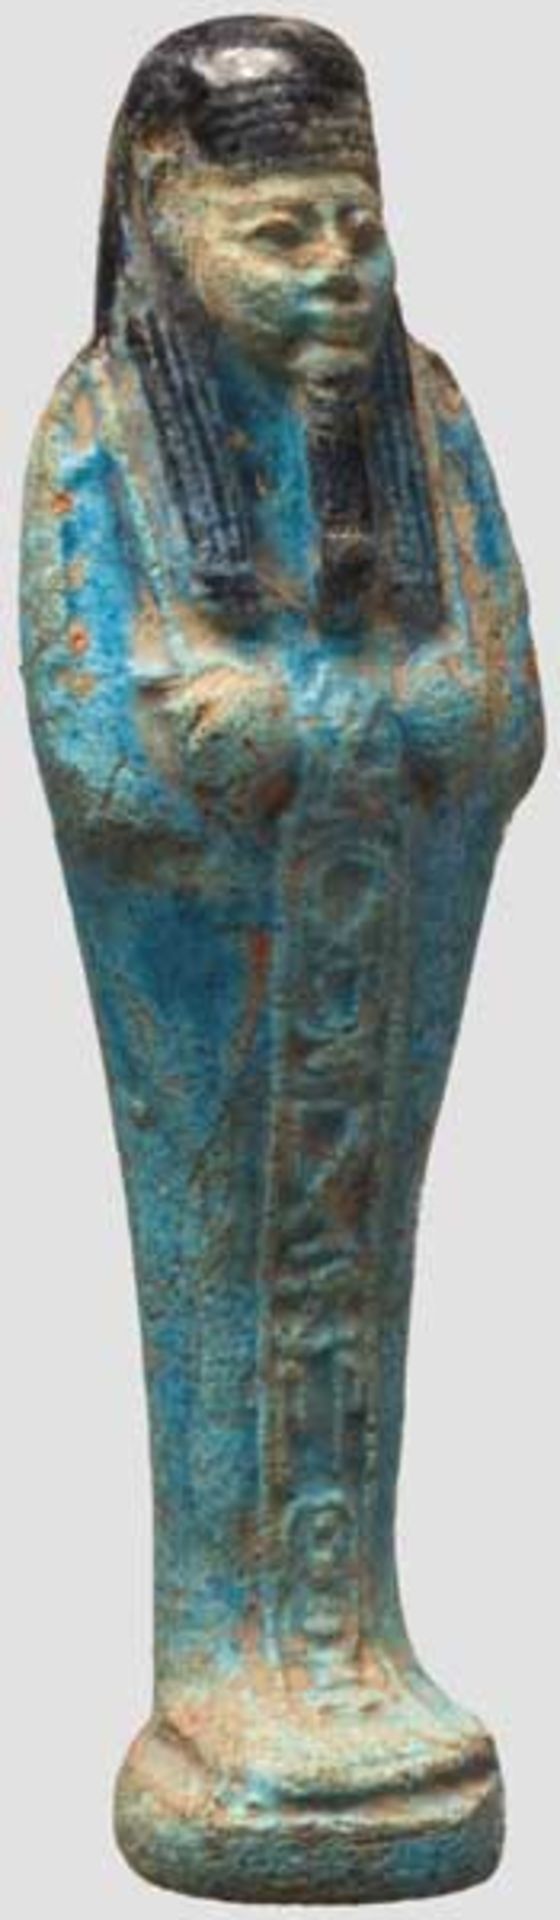 Uschebti, altägyptisch, 1. Hälfte 1. Jtsd. v. Chr.   Dienerfigur aus glasierter Fritte in - Bild 3 aus 3